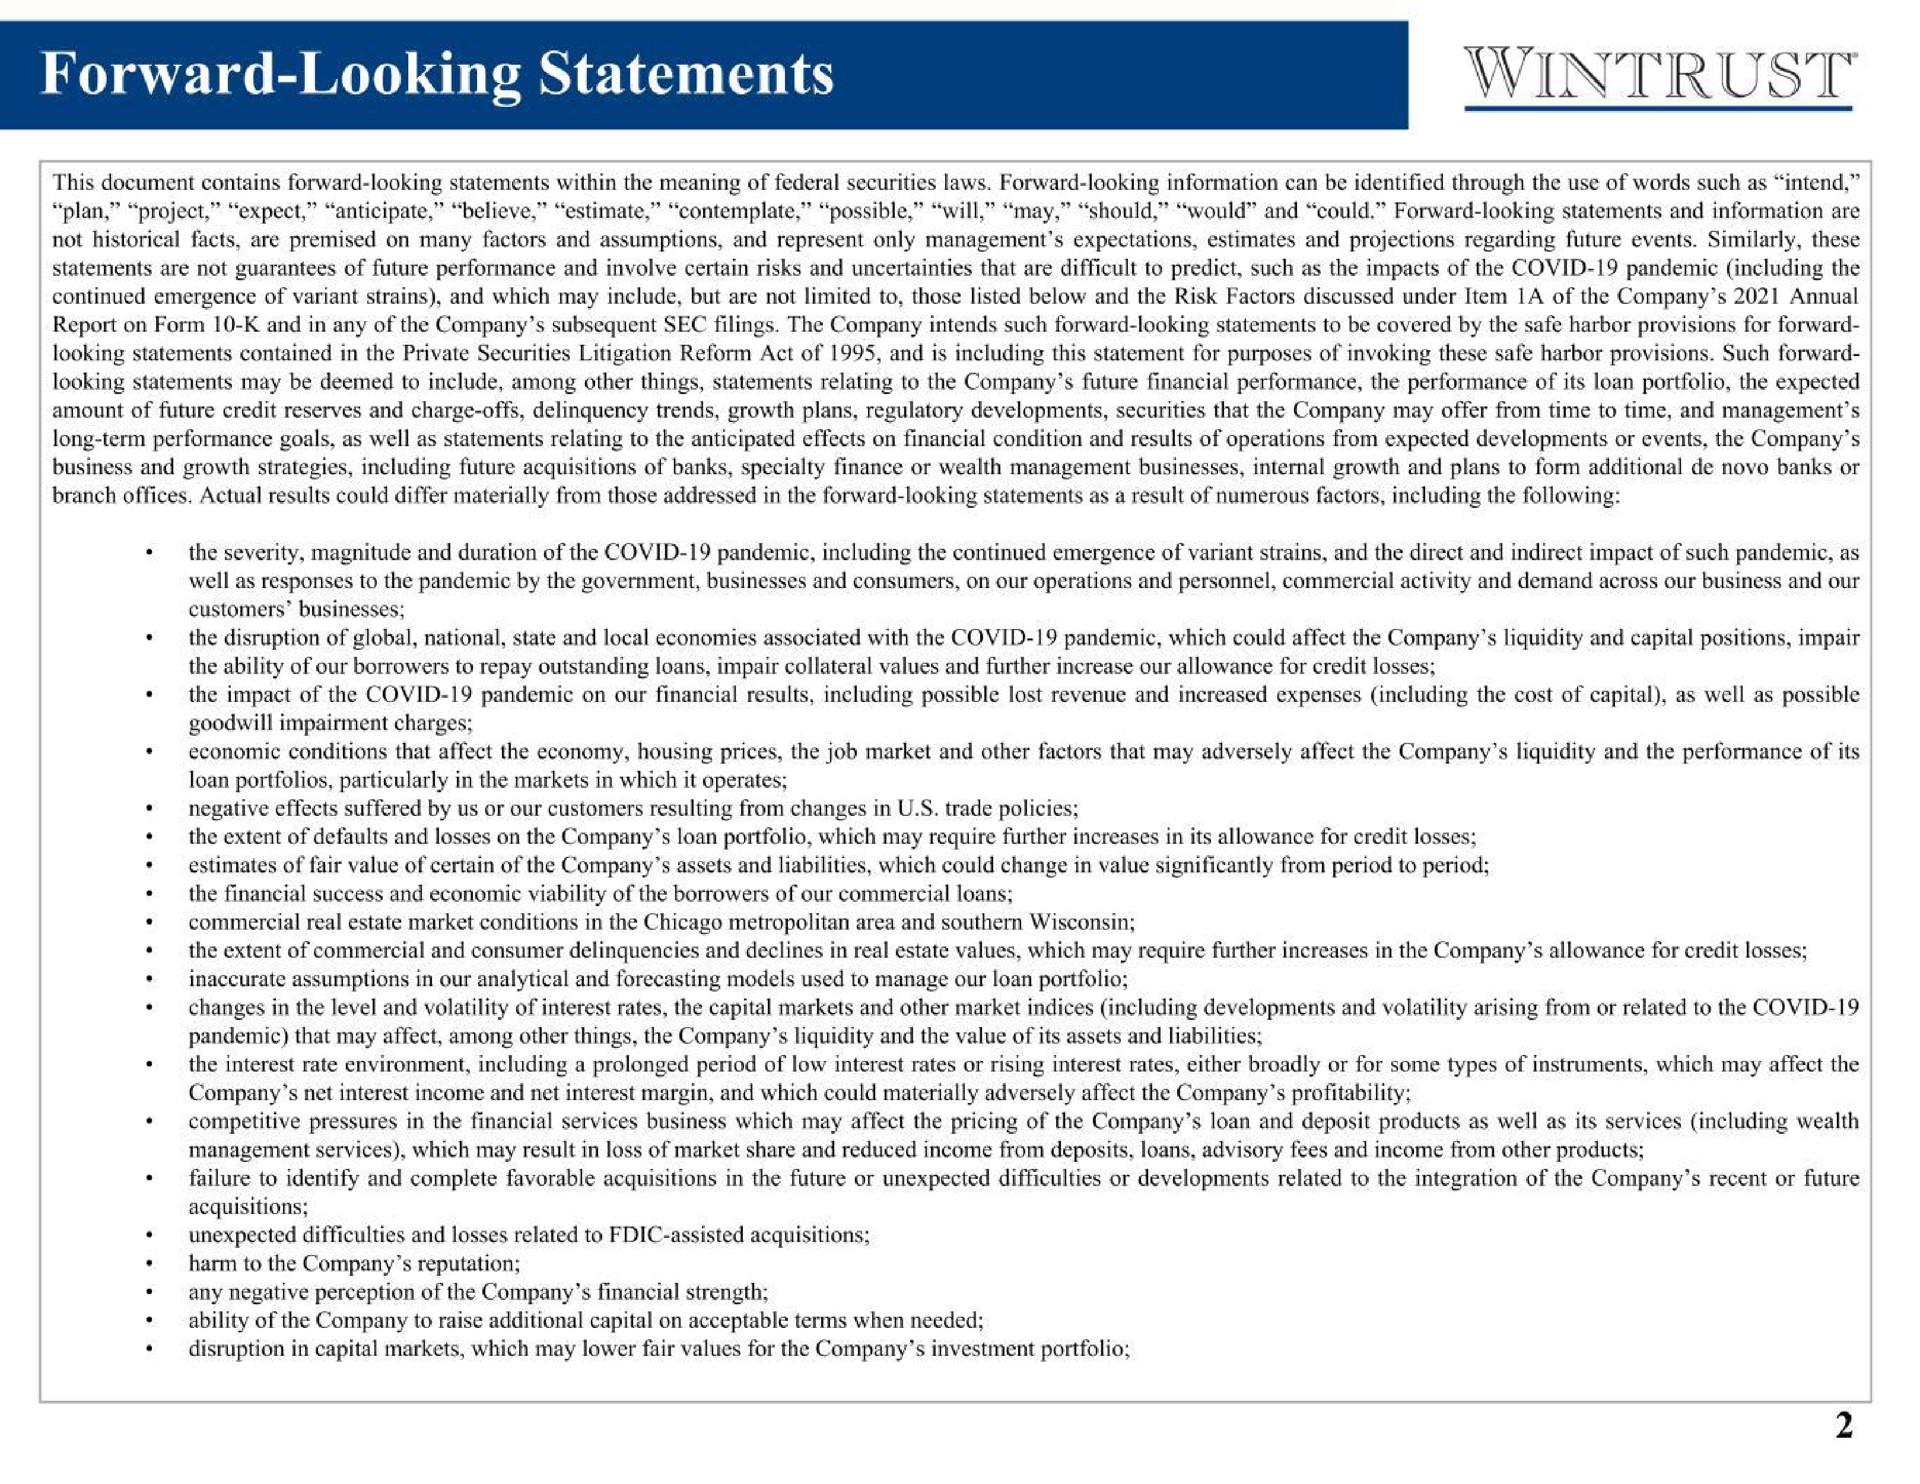 forward looking statements | Wintrust Financial